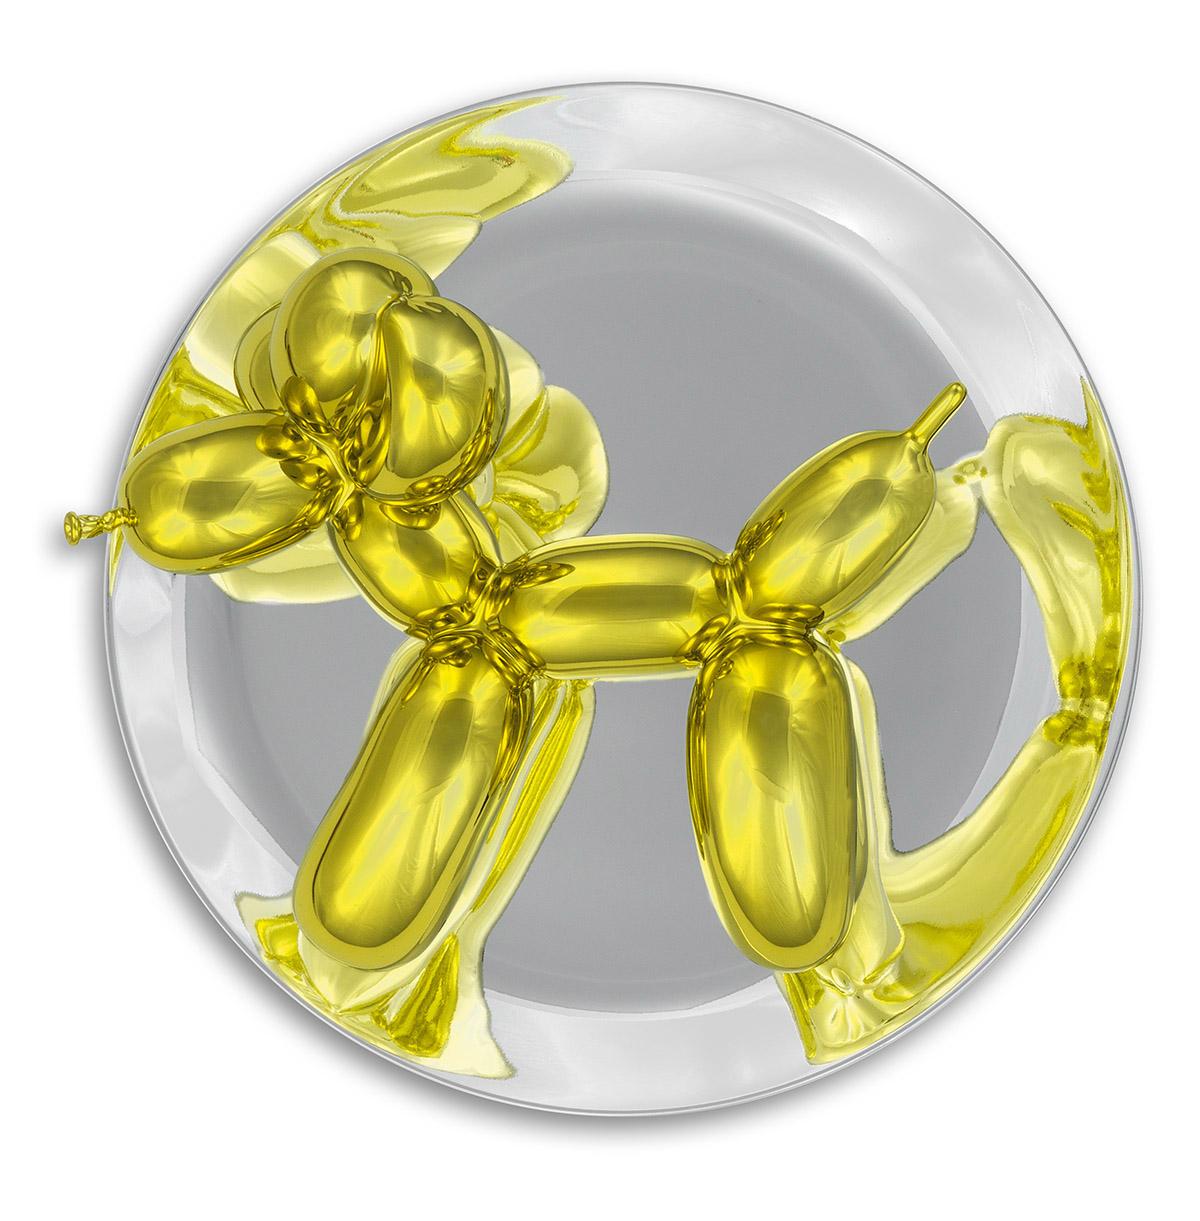 Figurative Sculpture Jeff Koons - Dog Balloon (jaune)